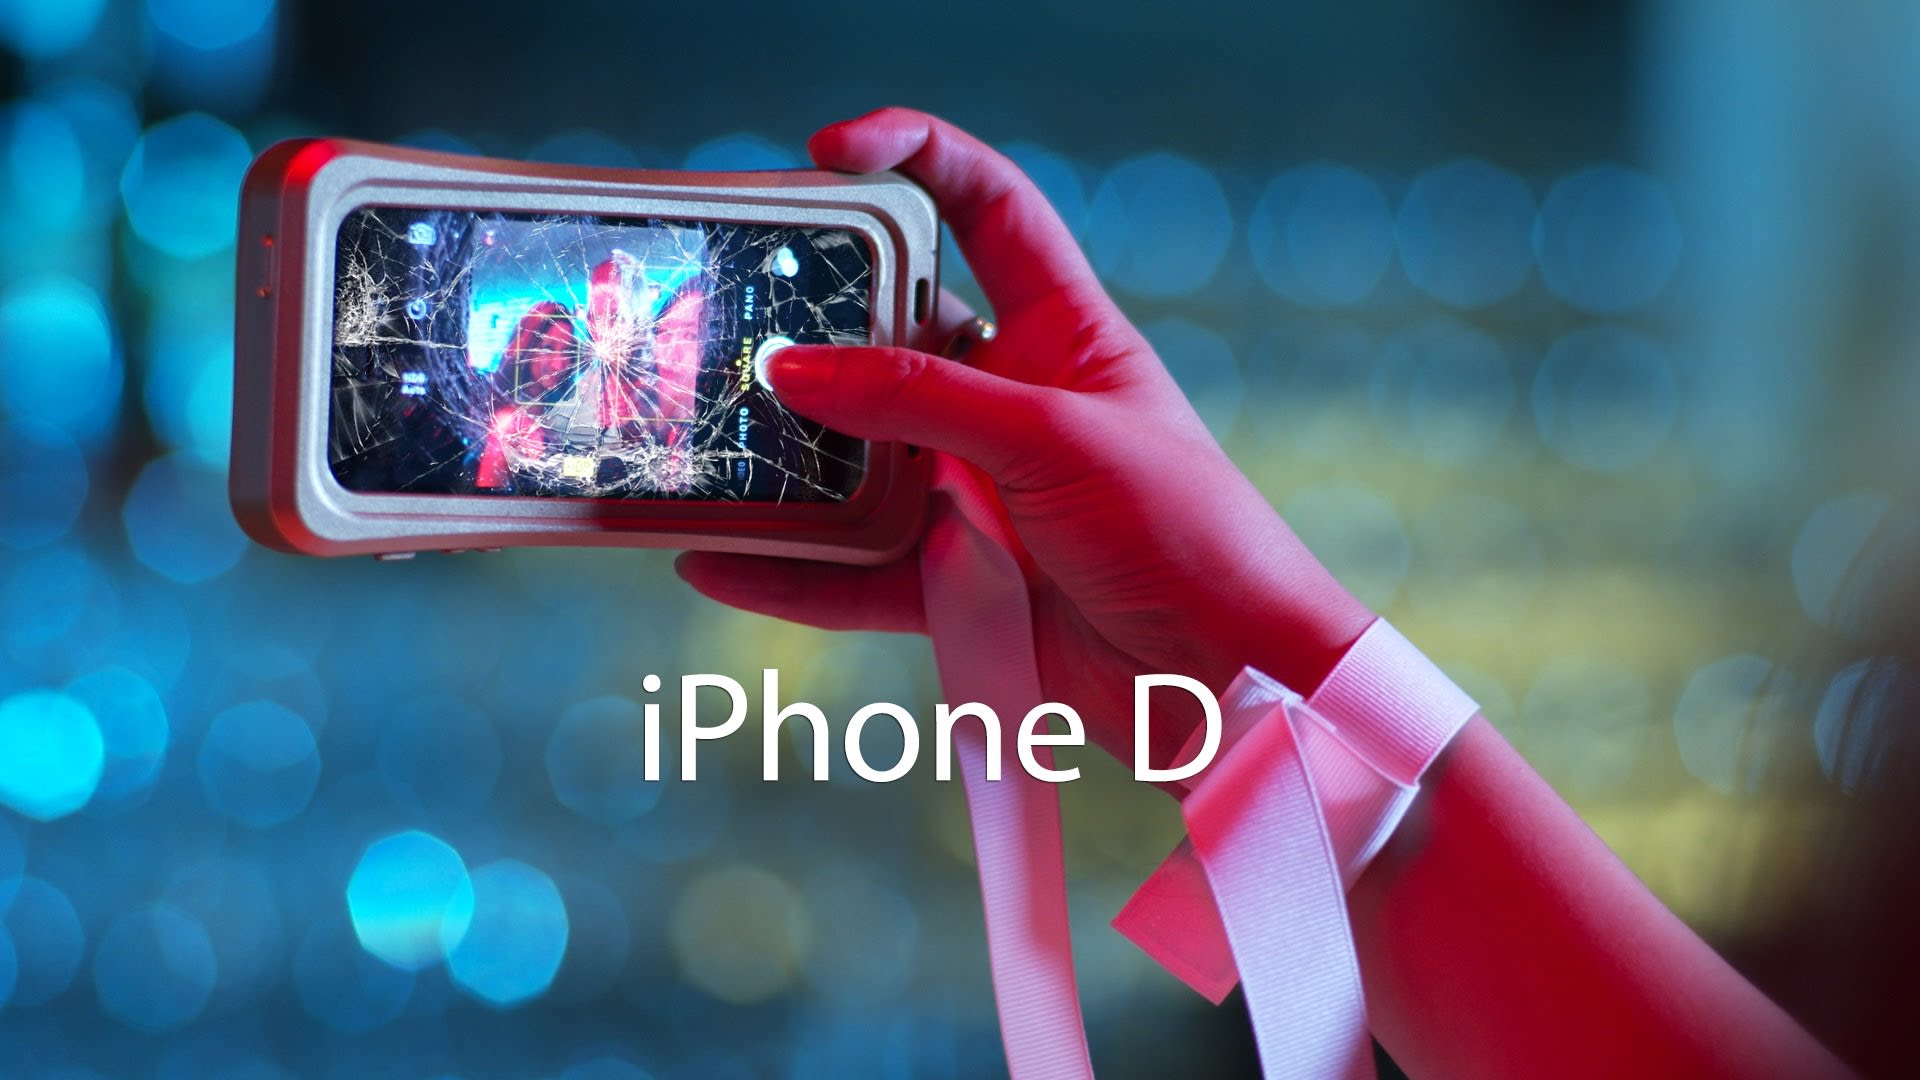 Nový iPhone D - speciálně pro ožraly!